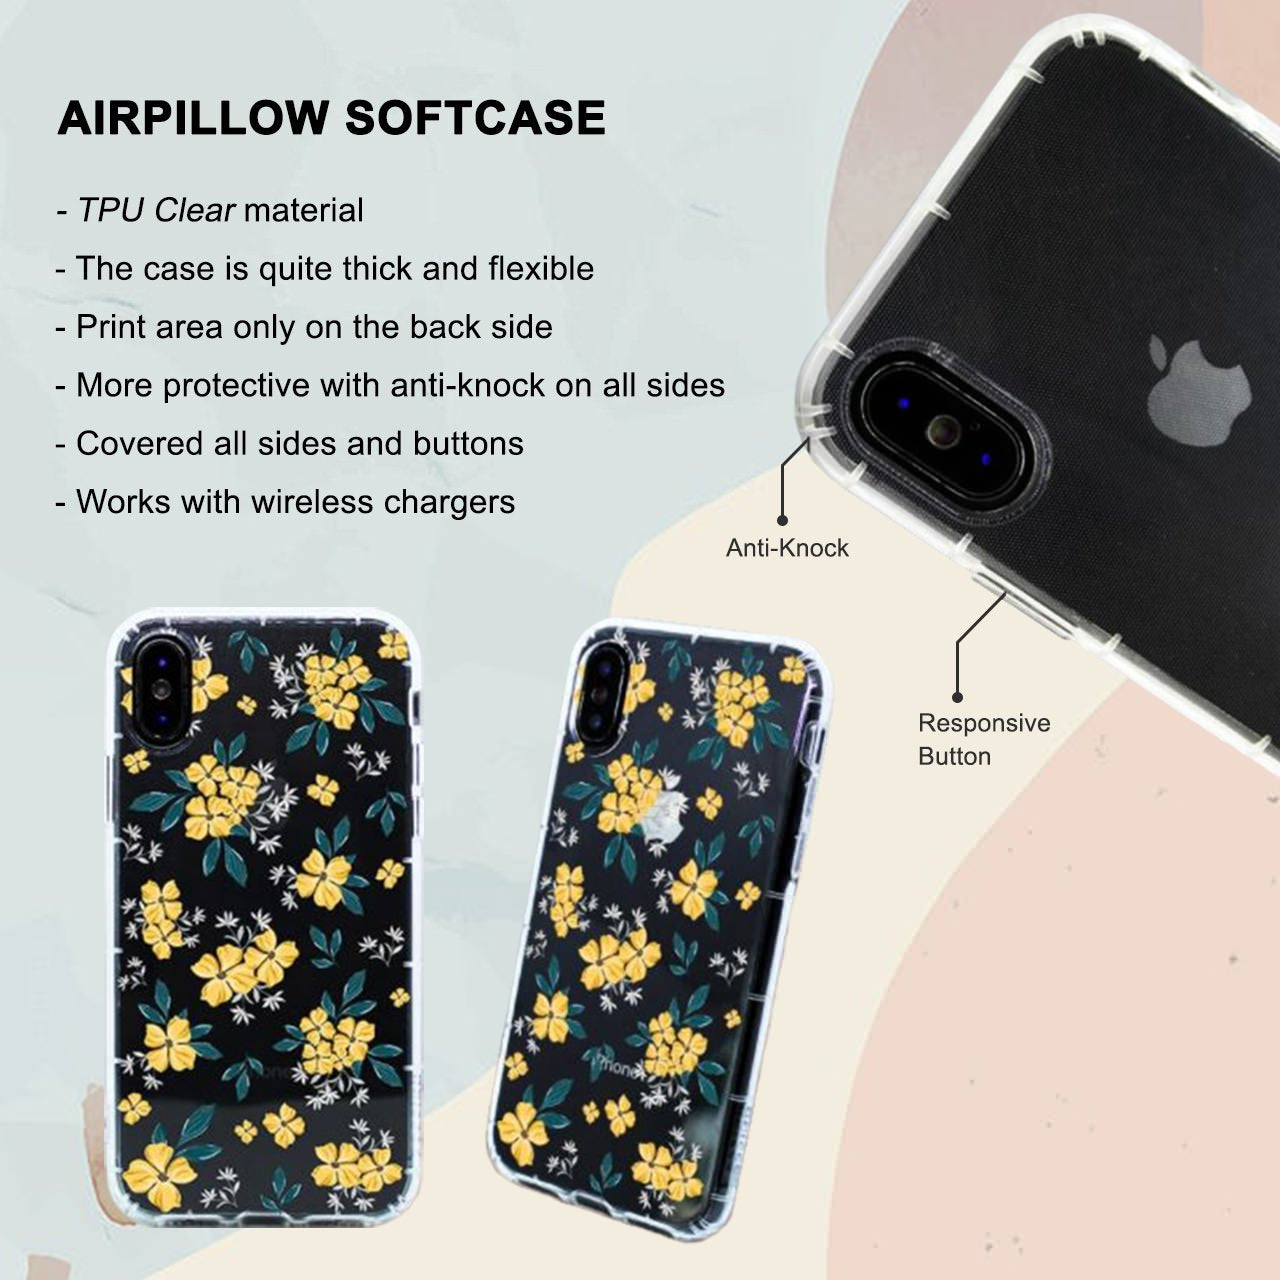 Lemons Fruit Pattern iPhone 6 / 6s Plus Case